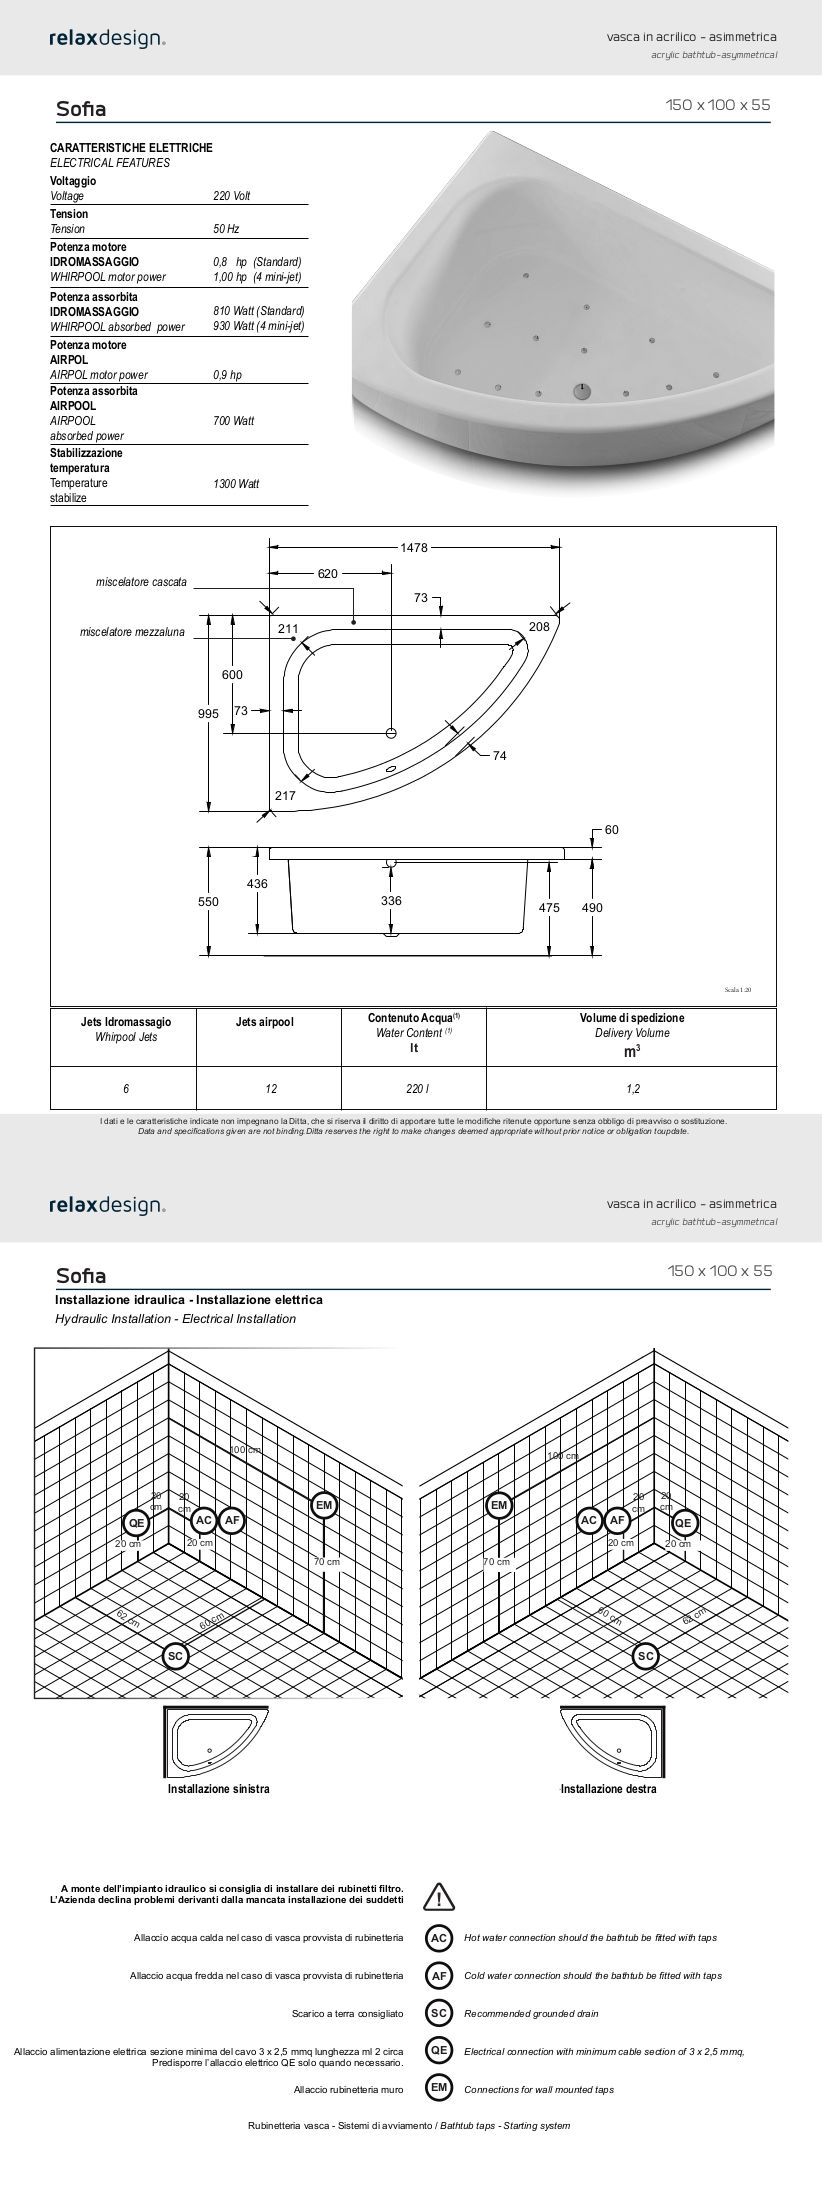 sofia relax design bathtub data sheet